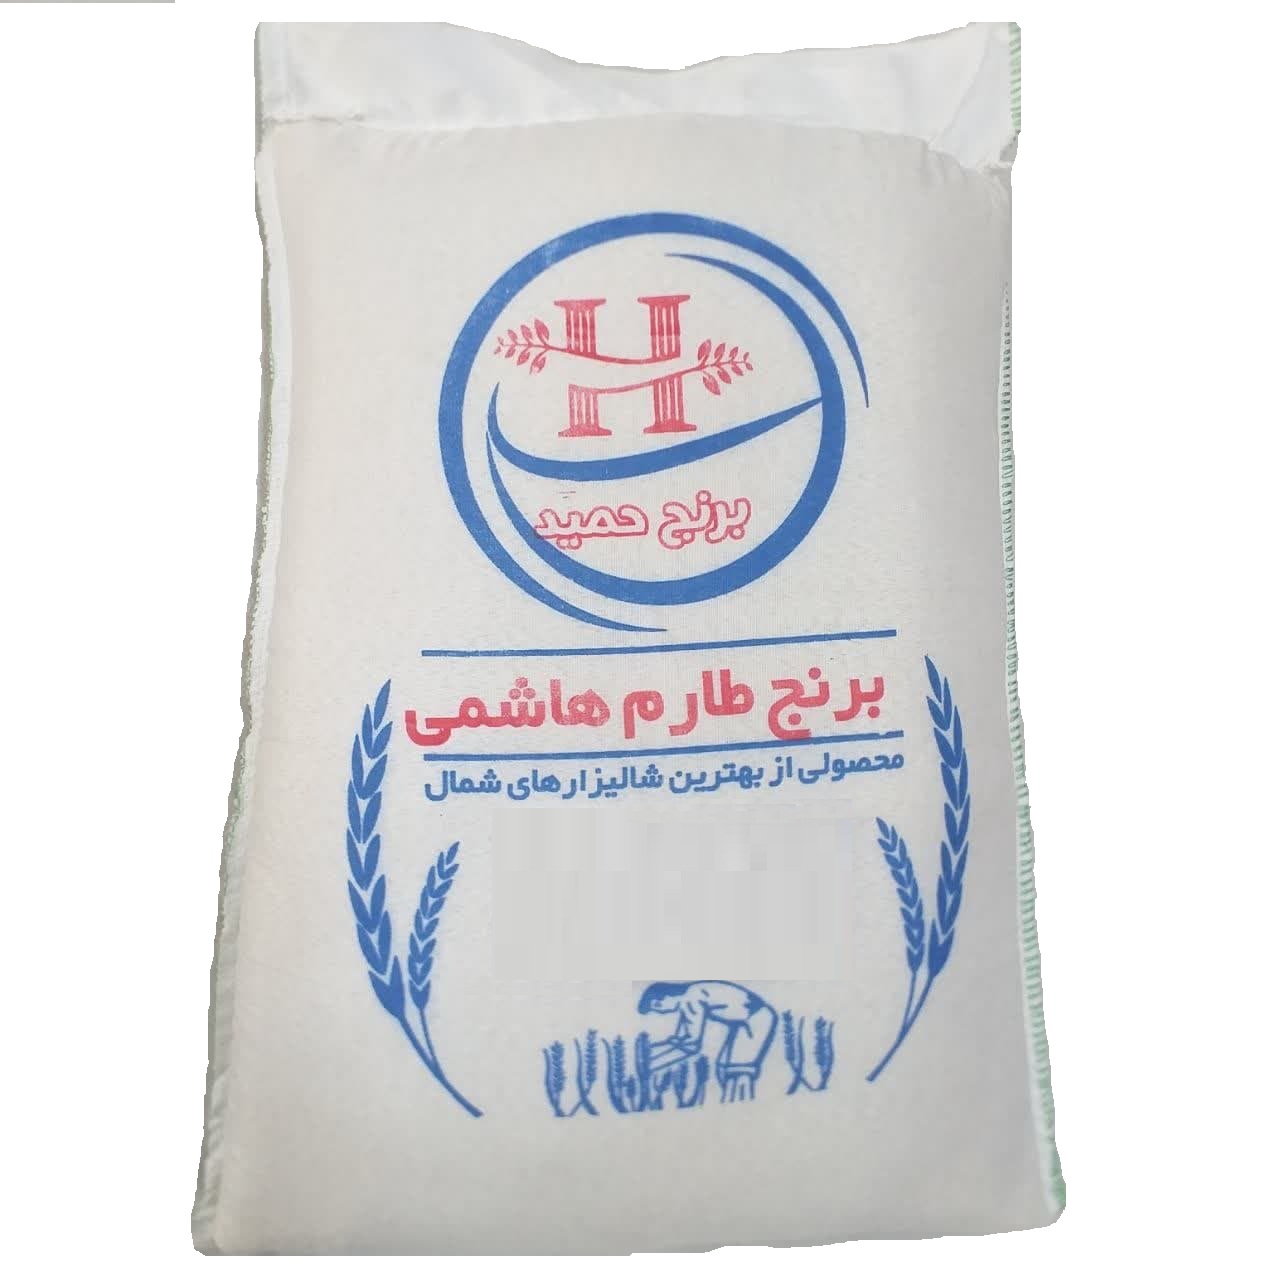 نکته خرید - قیمت روز برنج طارم هاشمی - 10 کیلوگرم خرید